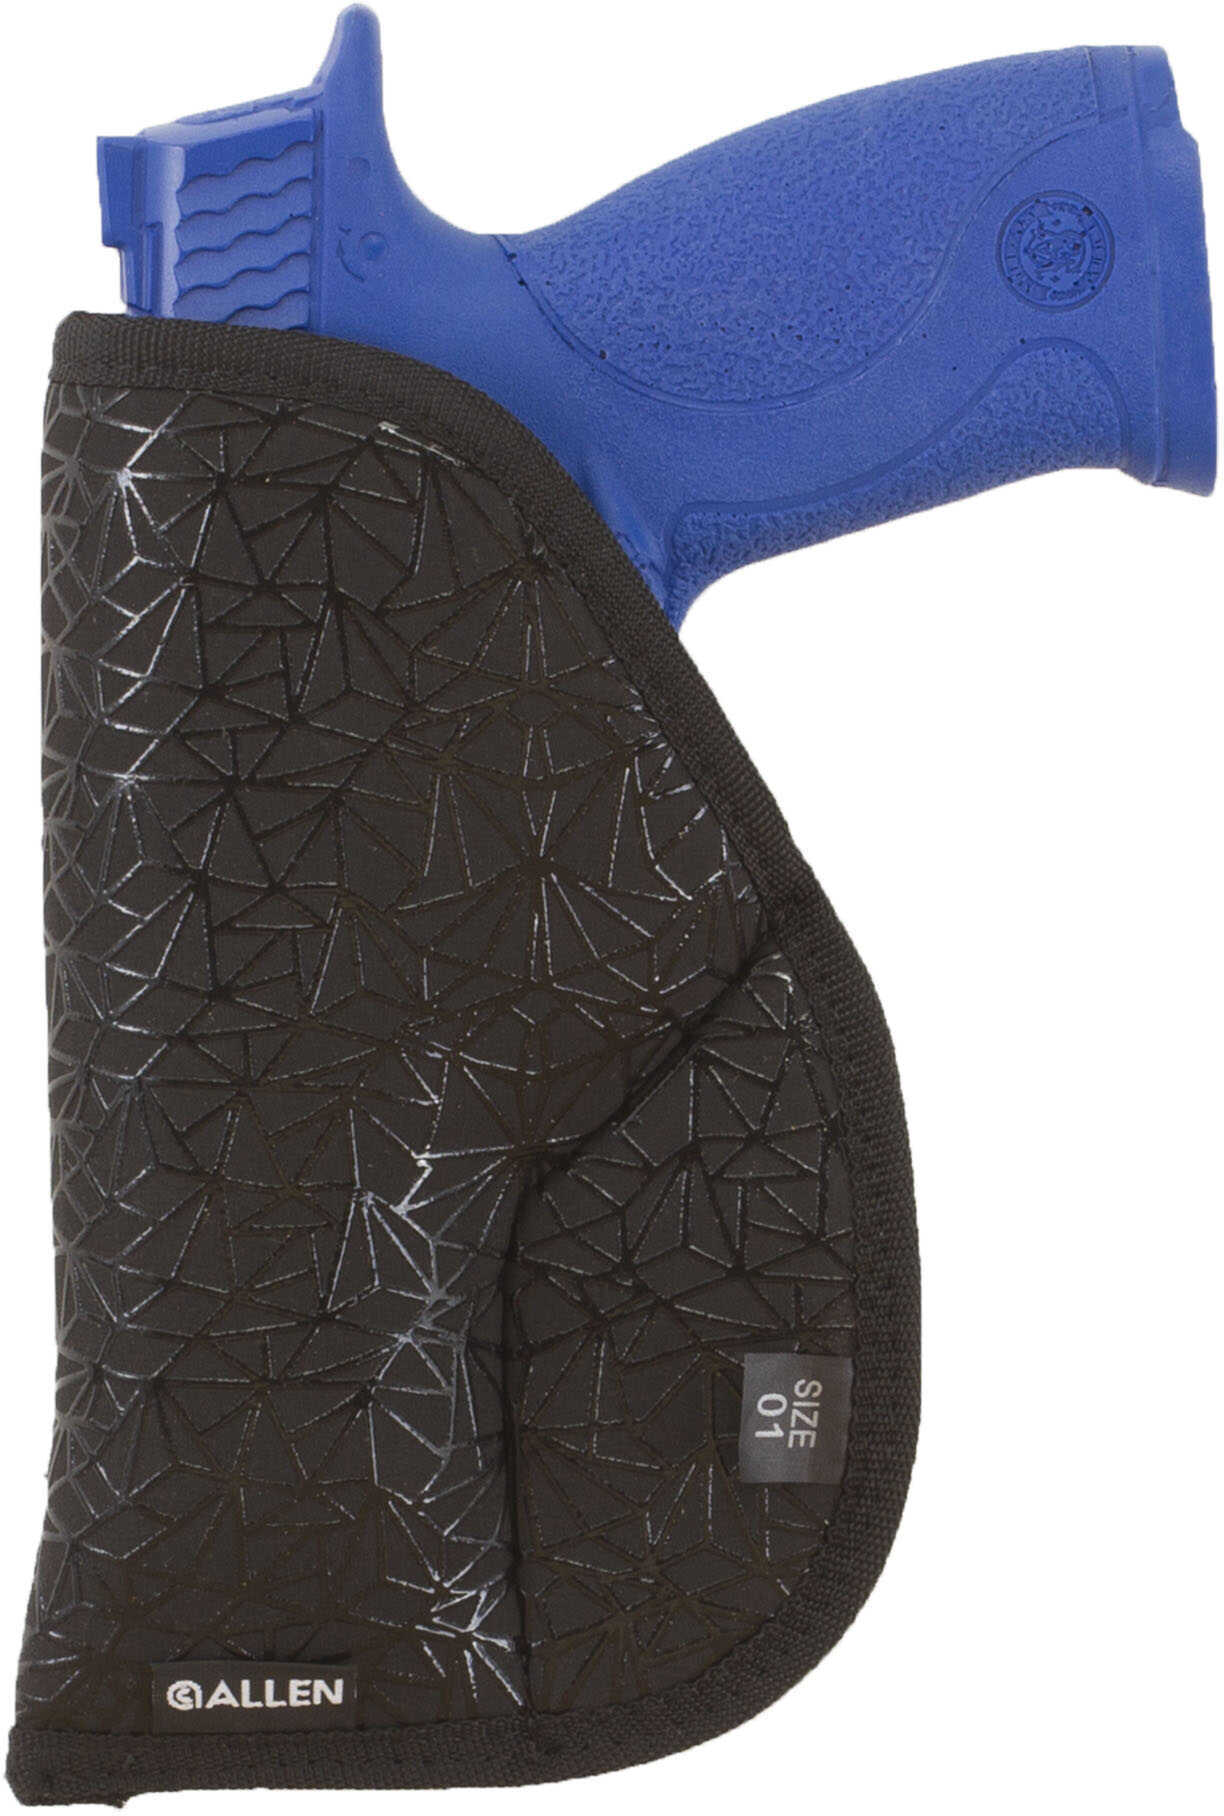 Allen Cases 44901 Spiderweb Handgun 01 Nylon Black